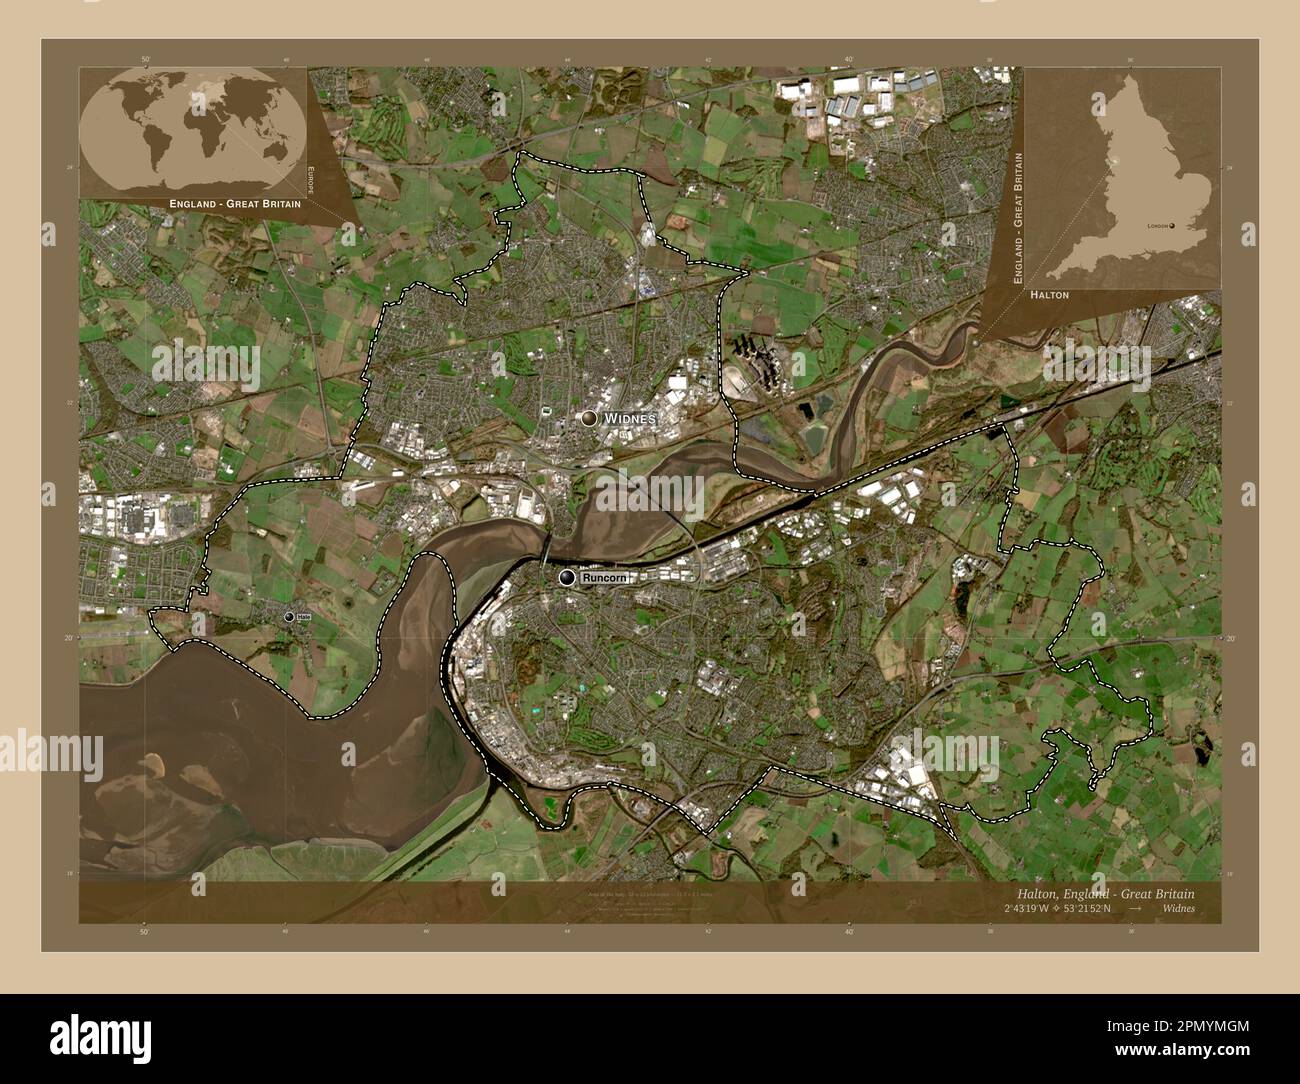 Halton, eine Einheit Englands - Großbritanniens. Satellitenkarte mit niedriger Auflösung. Standorte und Namen der wichtigsten Städte der Region. Ecke zusatzgeräte Stockfoto